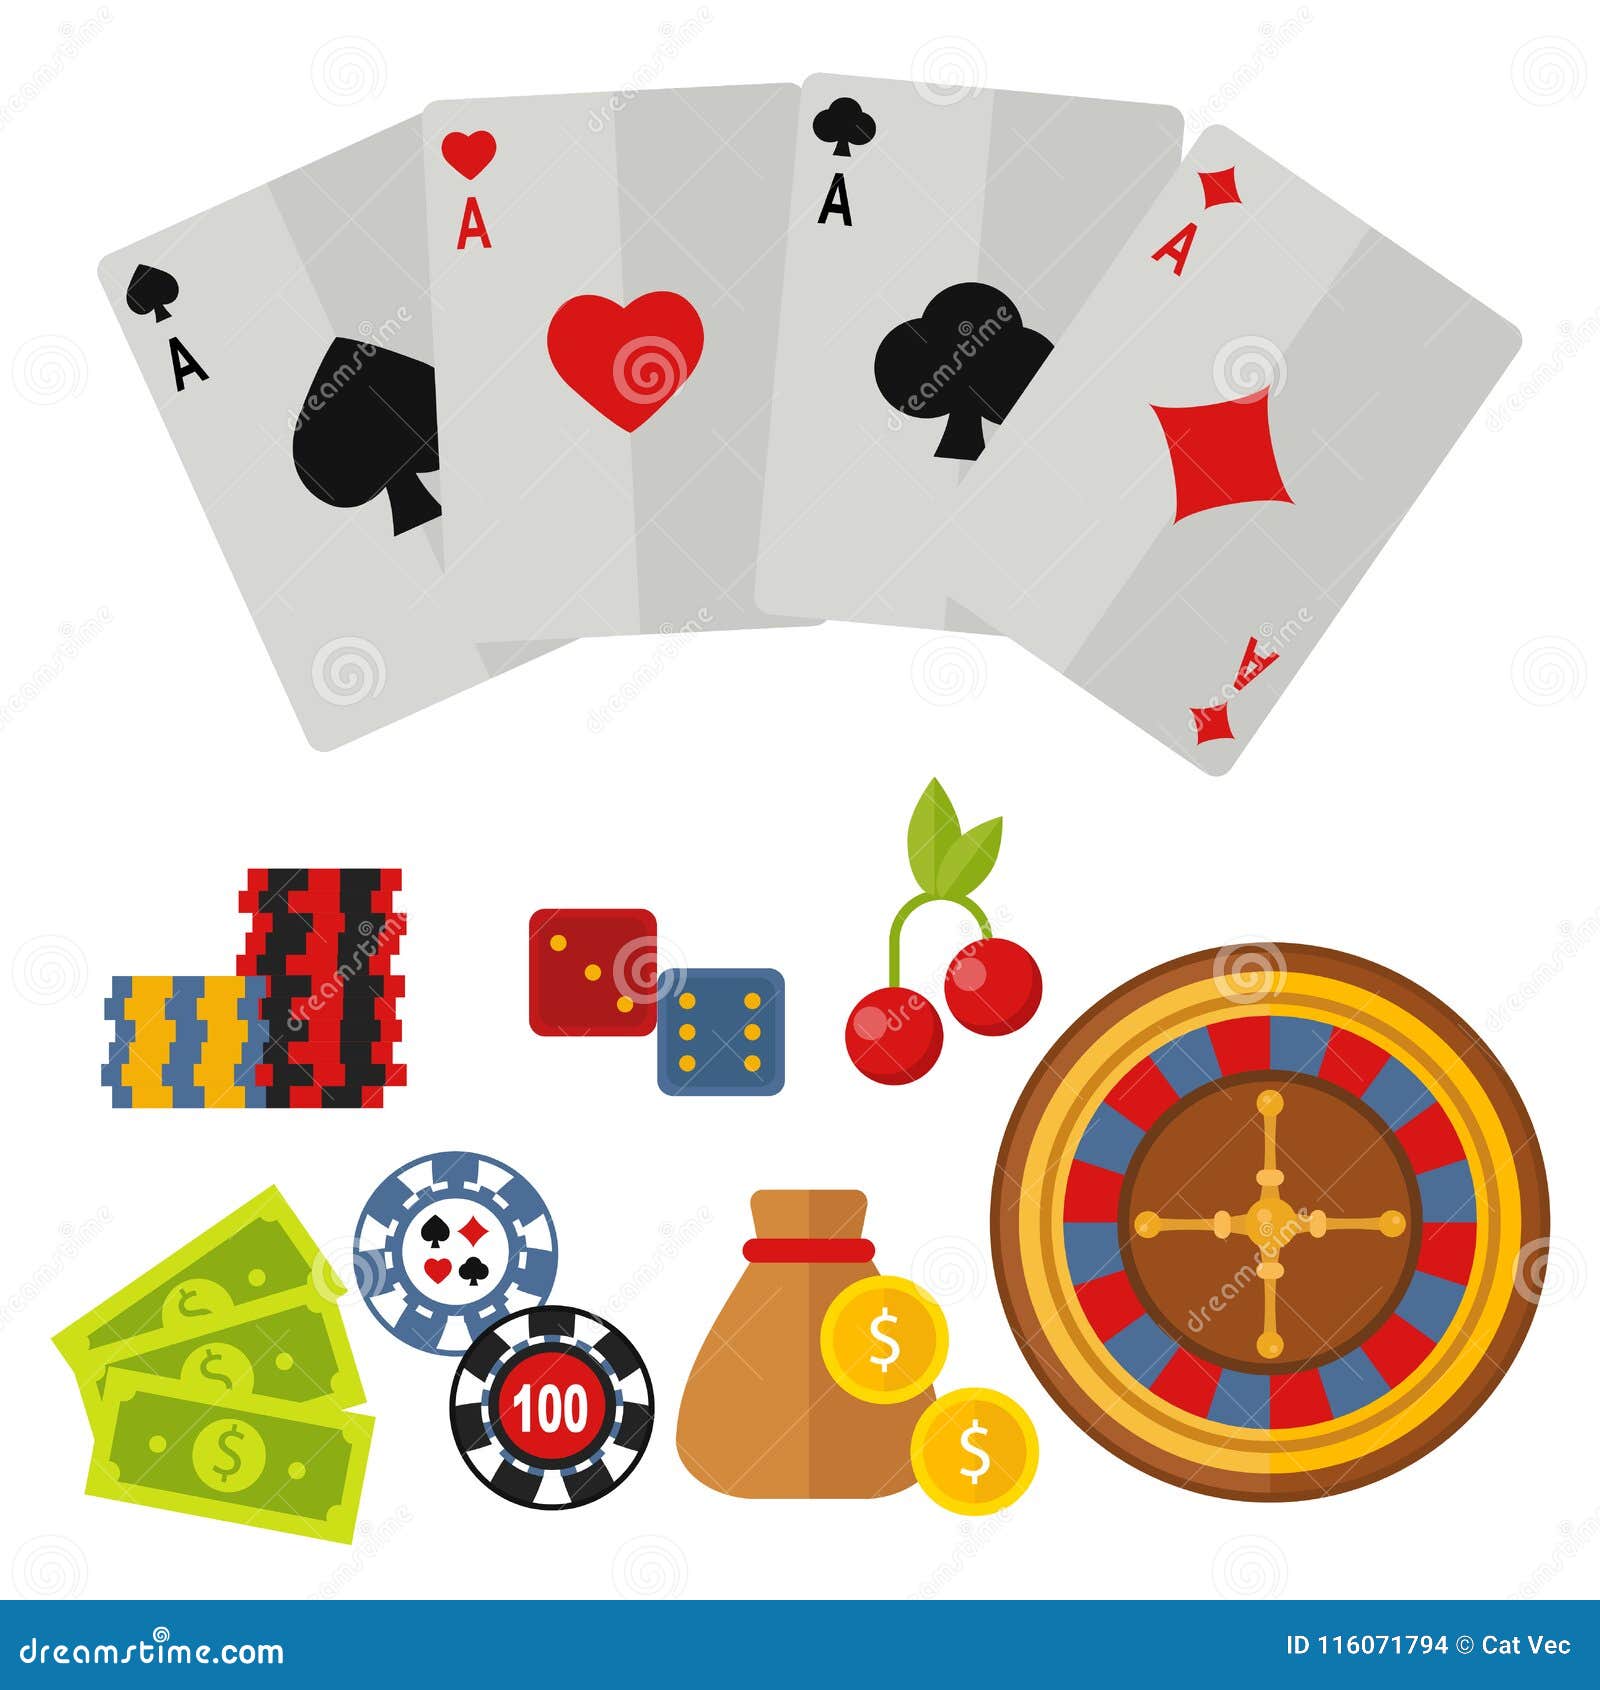 Casino Icons Set With Roulette Gambler Joker Slot Machine Poker Game Vector Illustration Stock Vector Illustration Of Addiction Dollar 116071794